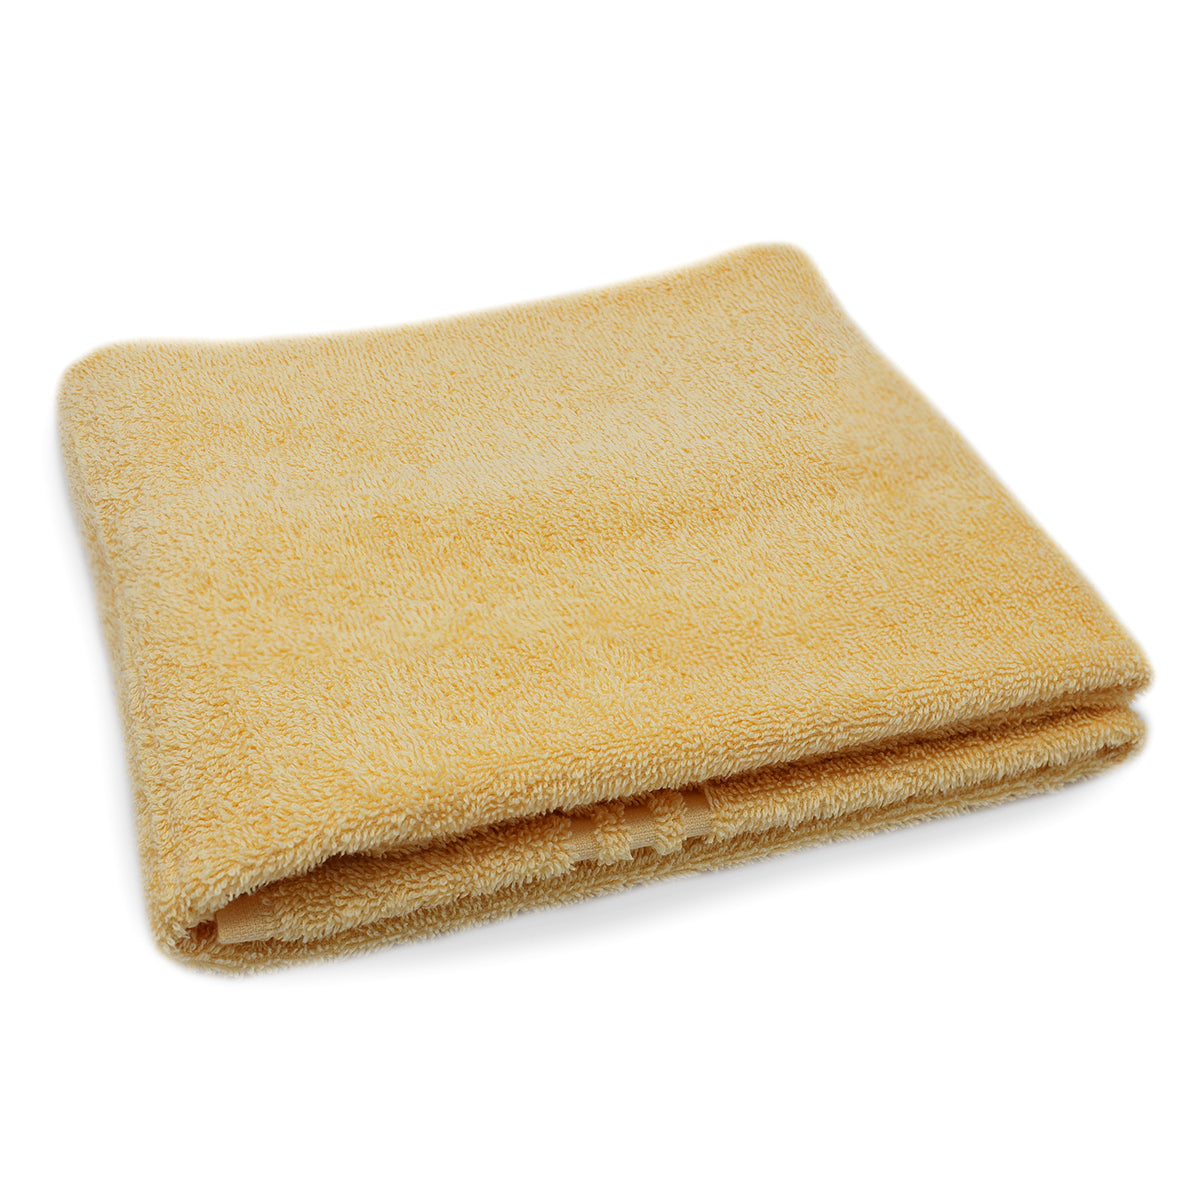 (10 stk.) Grønlandshåndklæde - 50 x 100 cm - gul